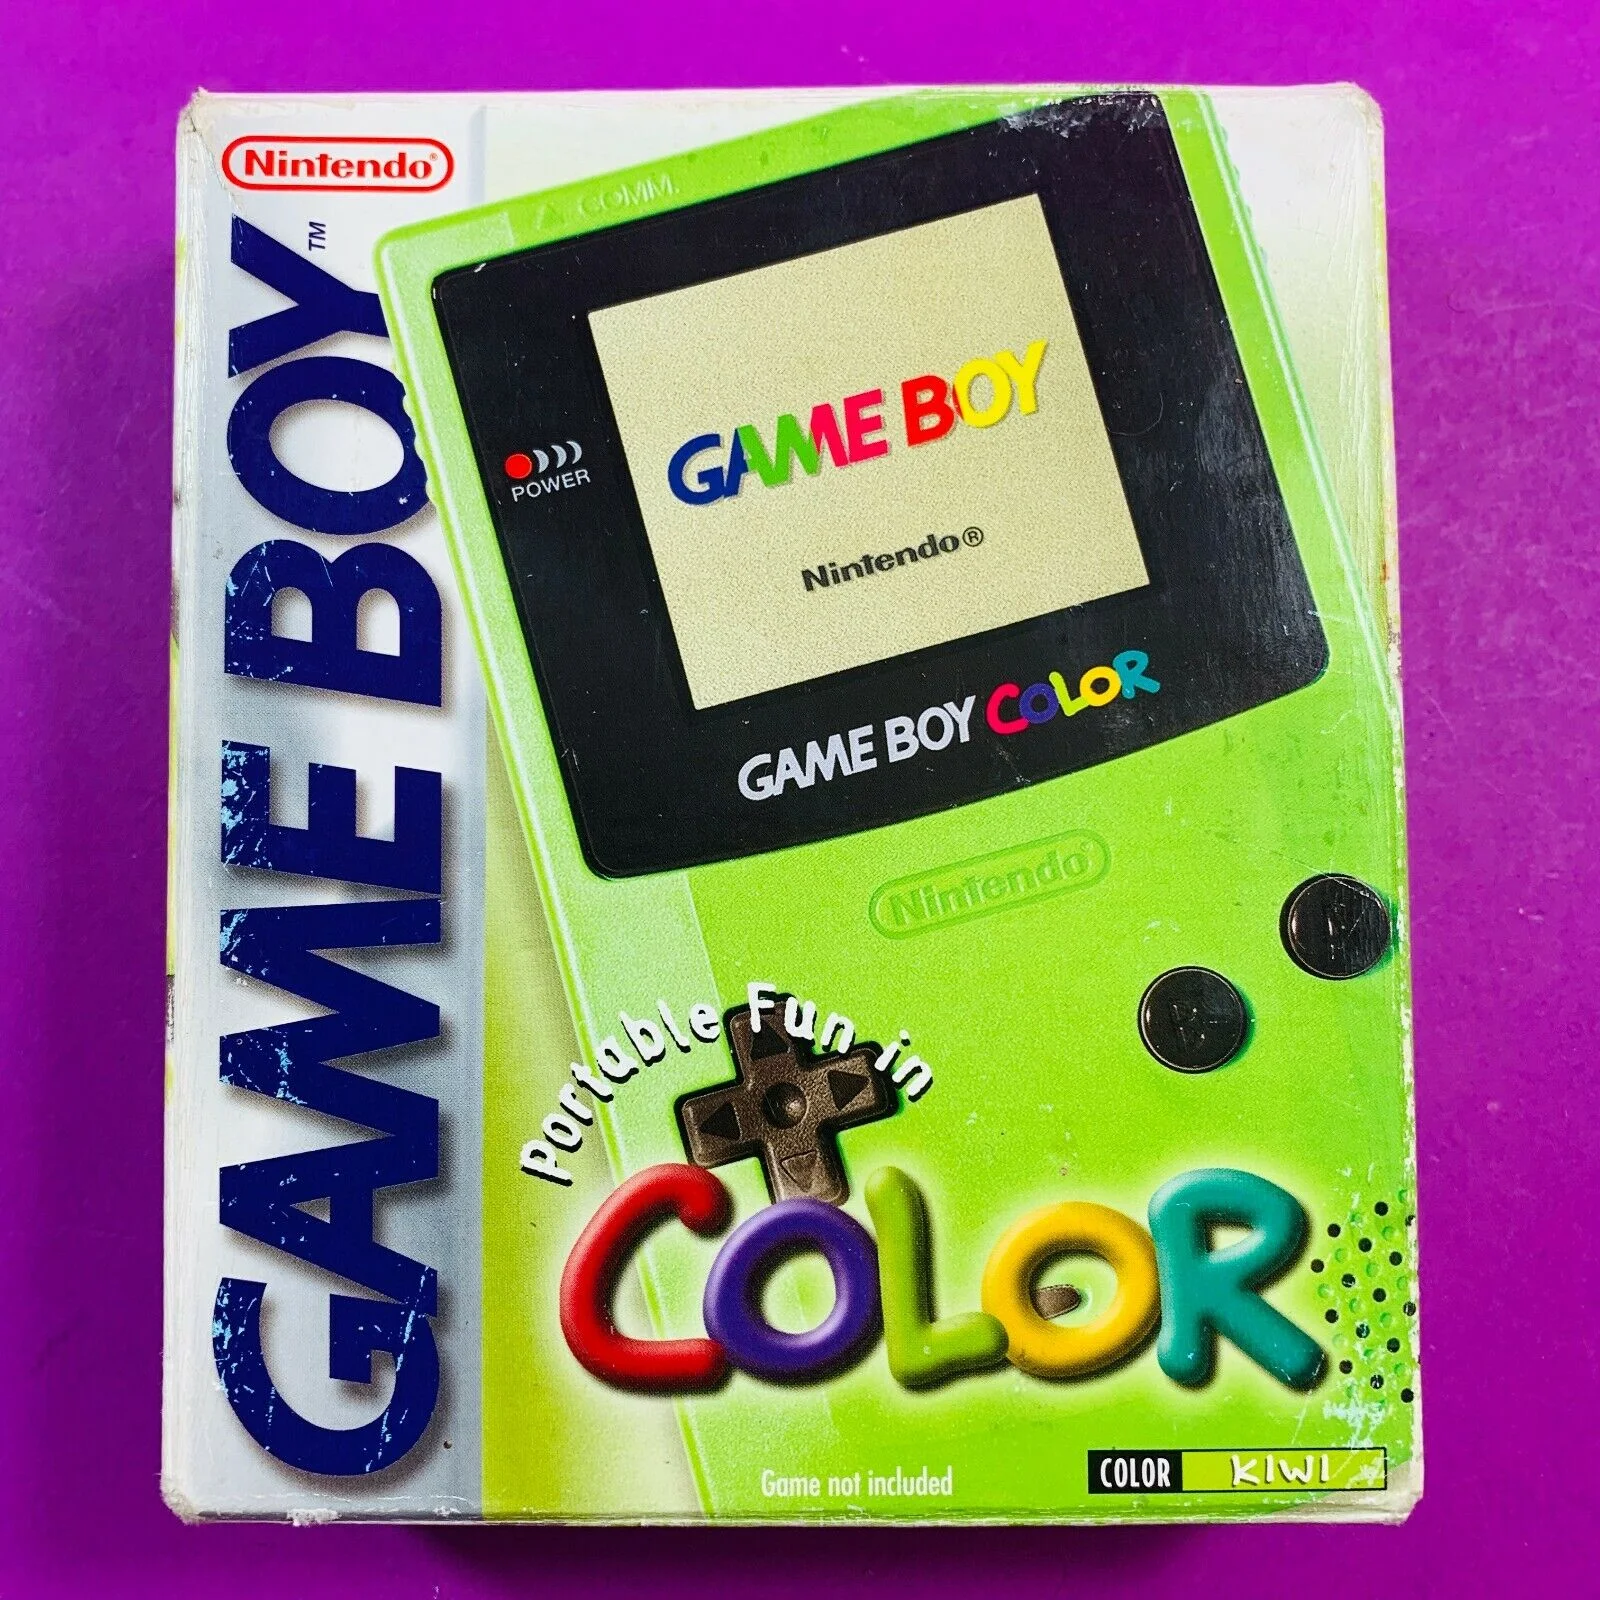  Nintendo Game Boy Color Kiwi Color Console [AUS]